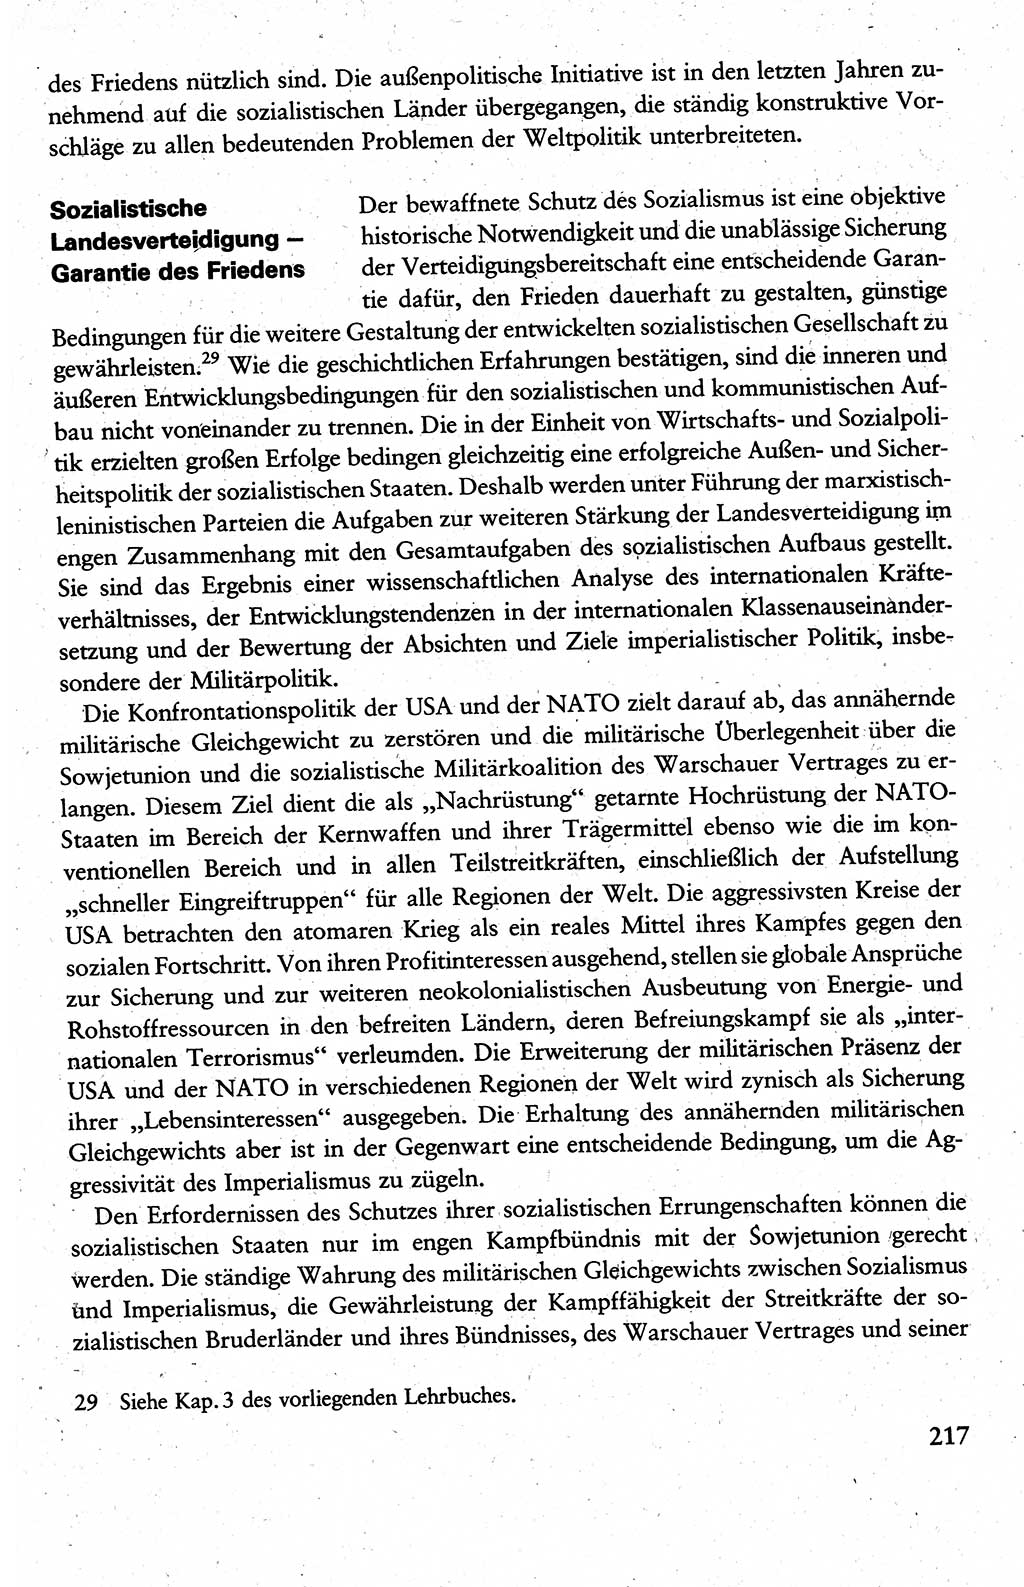 Wissenschaftlicher Kommunismus [Deutsche Demokratische Republik (DDR)], Lehrbuch für das marxistisch-leninistische Grundlagenstudium 1983, Seite 217 (Wiss. Komm. DDR Lb. 1983, S. 217)